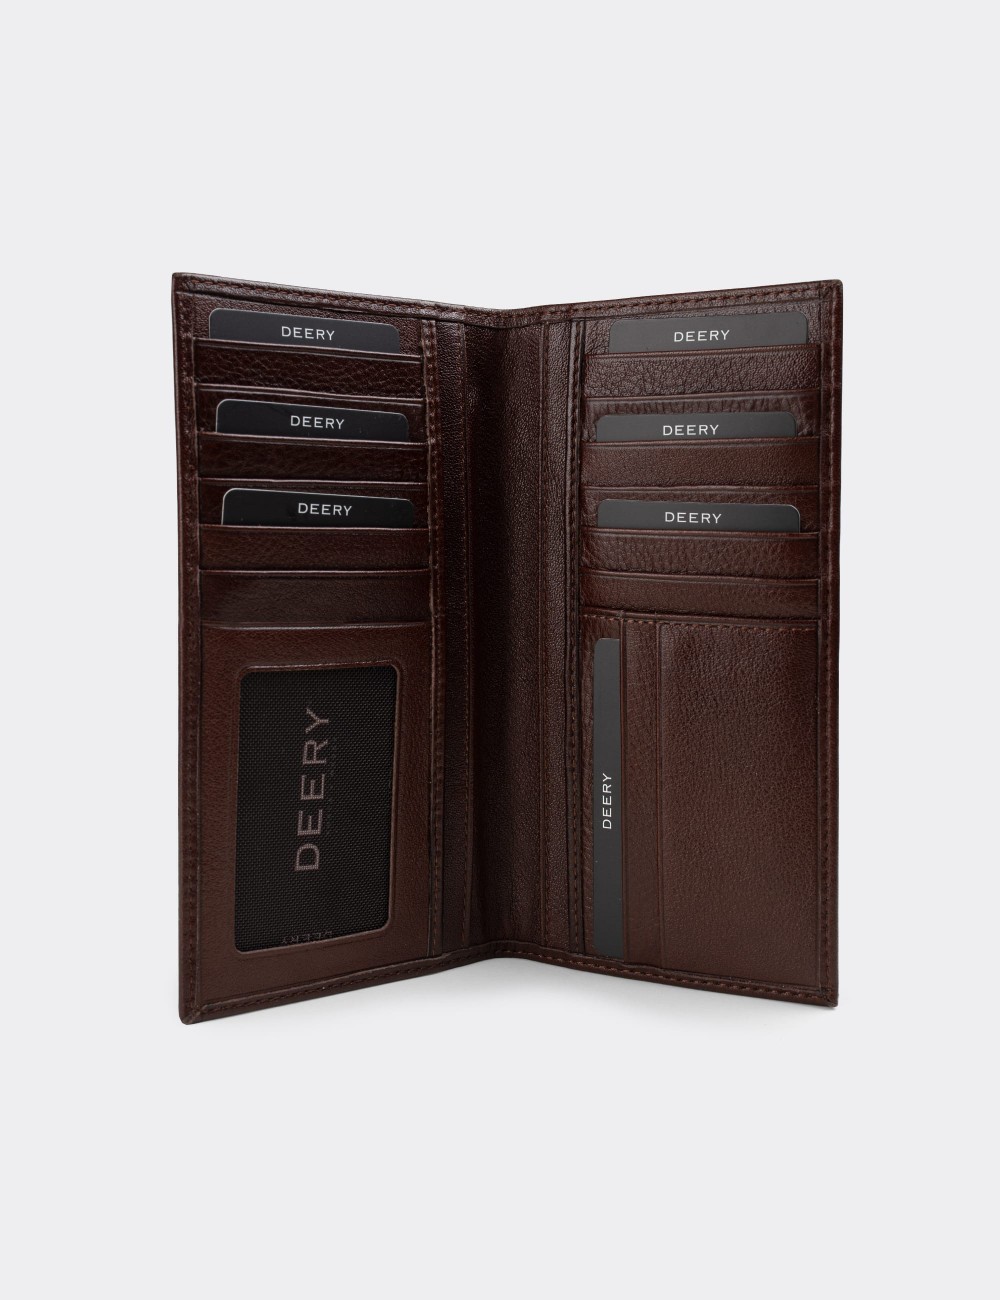  Leather Brown Men's Wallet - 00802MKHVZ01